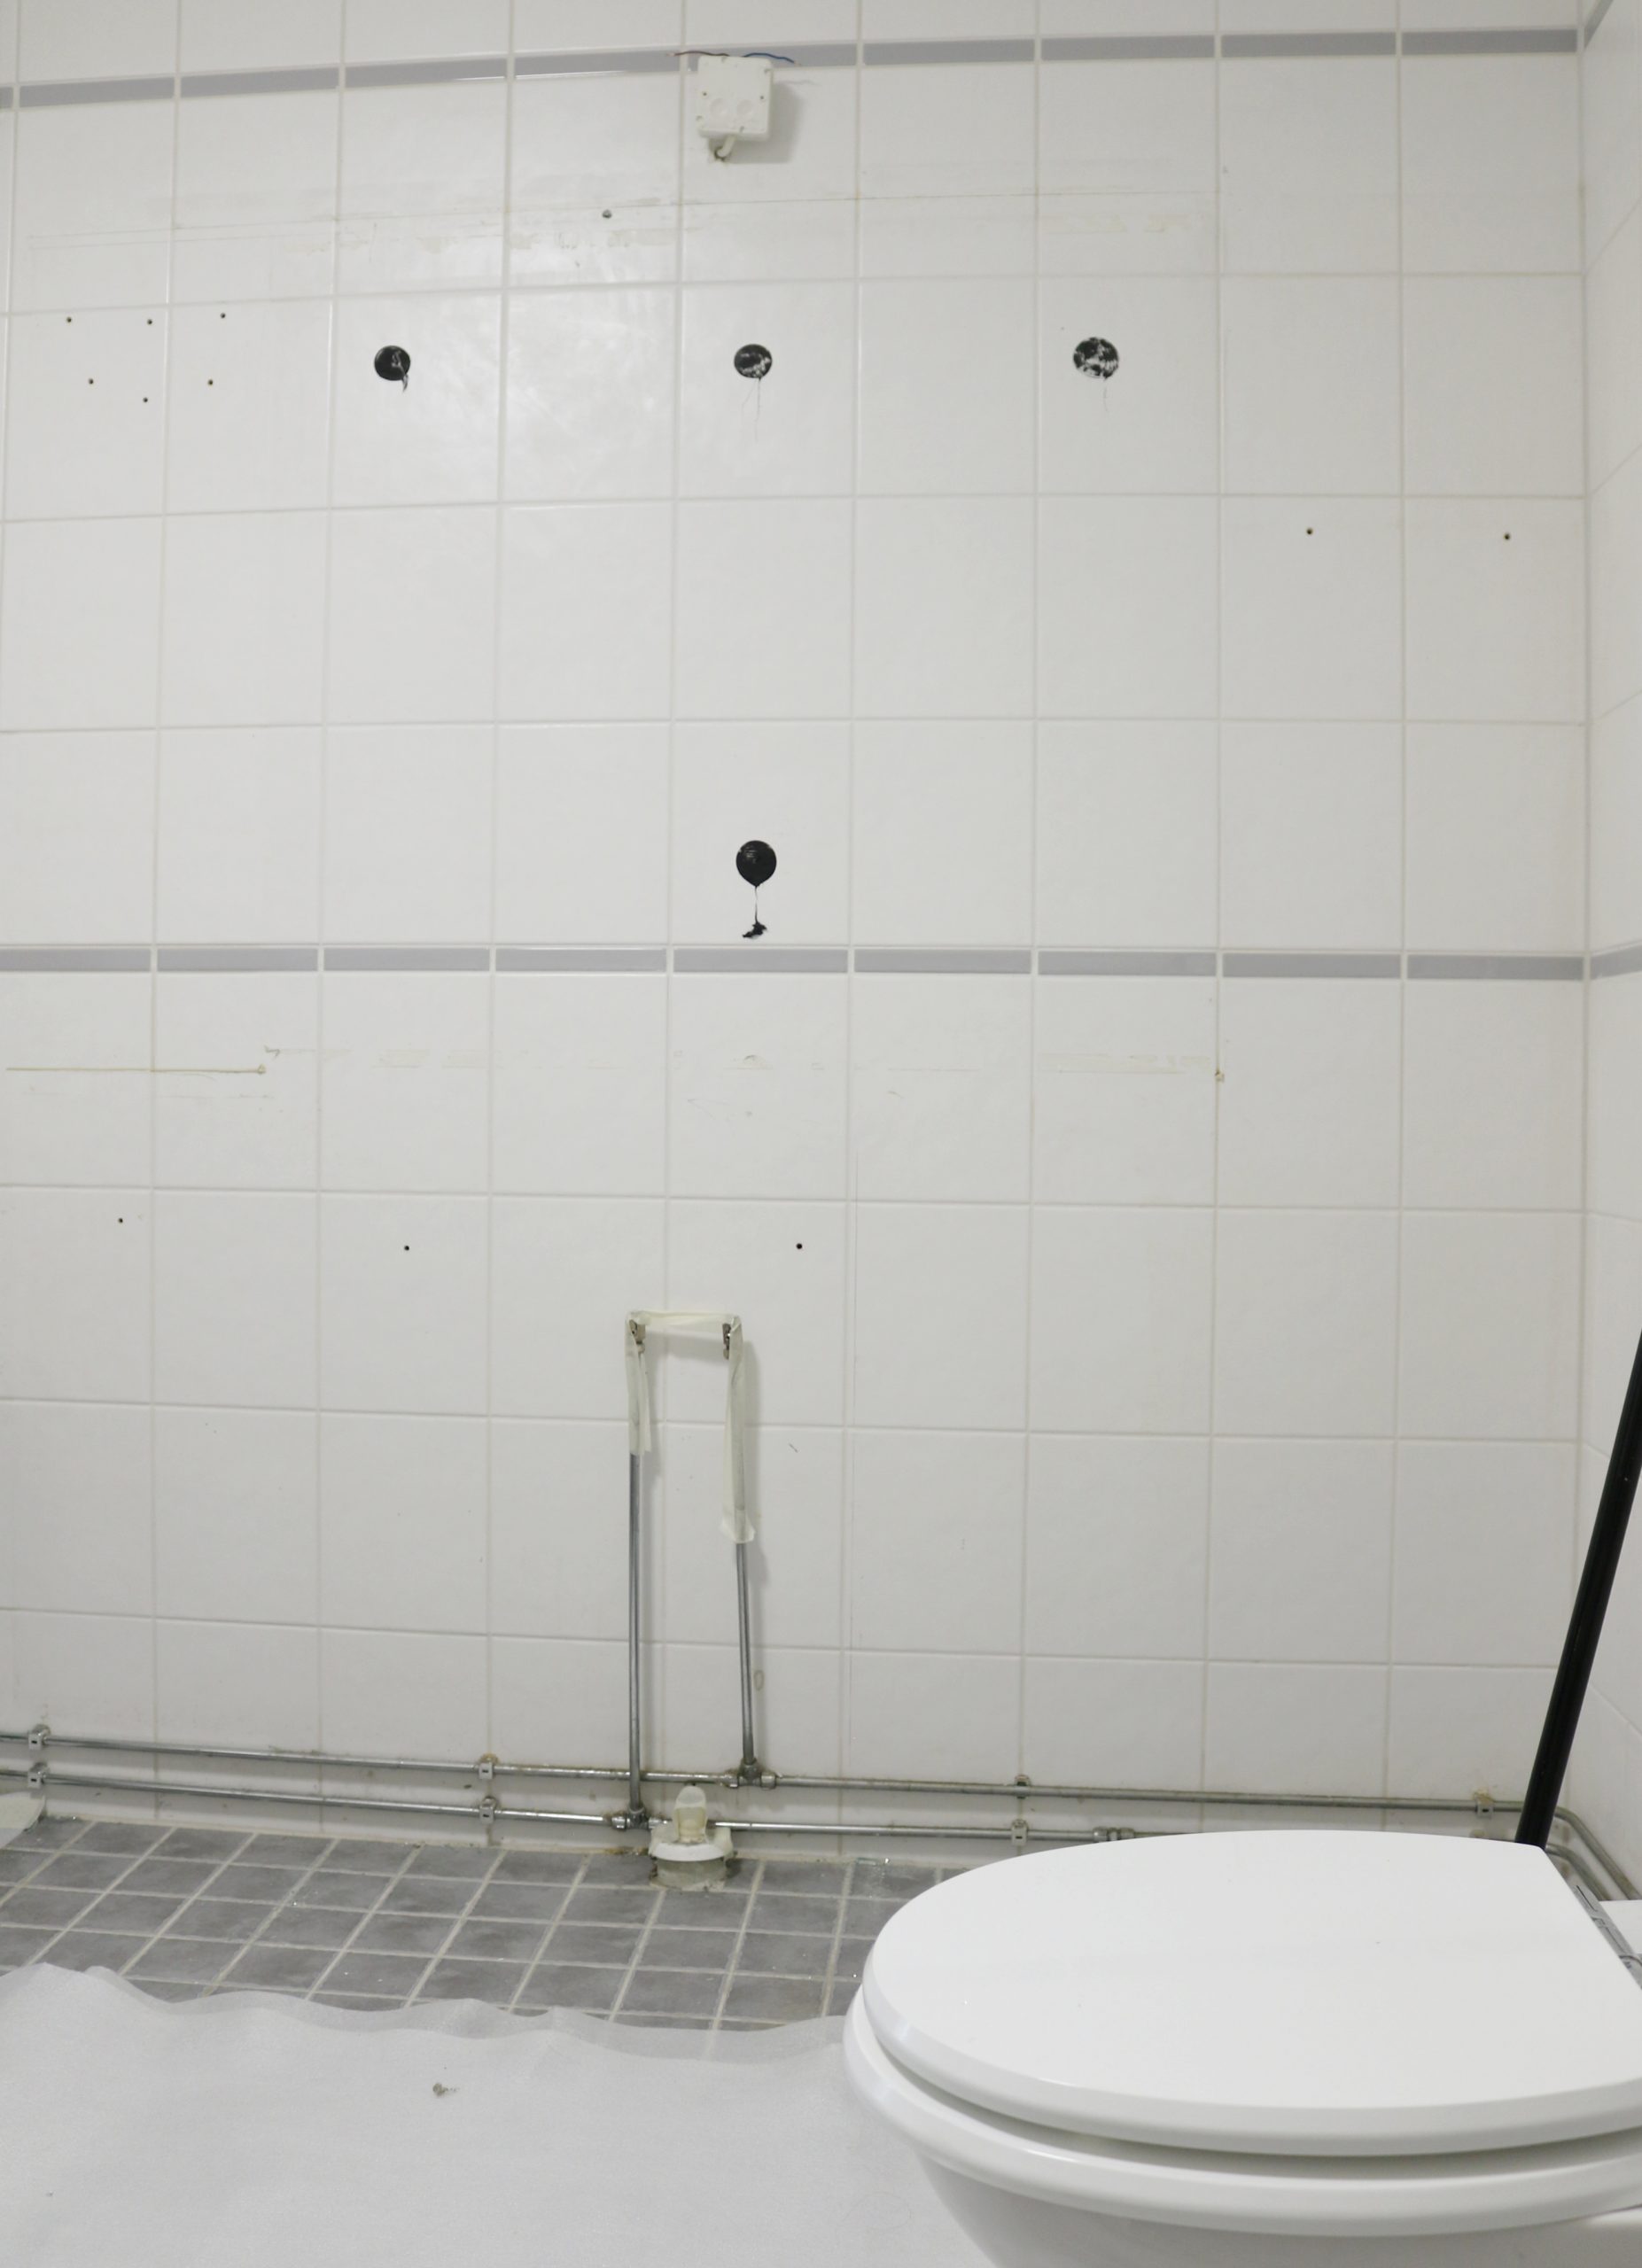 Kylpyhuoneremontti - Uusi ilme kylpyhuoneeseen kustannustehokkaasti Omakotivalkoinen